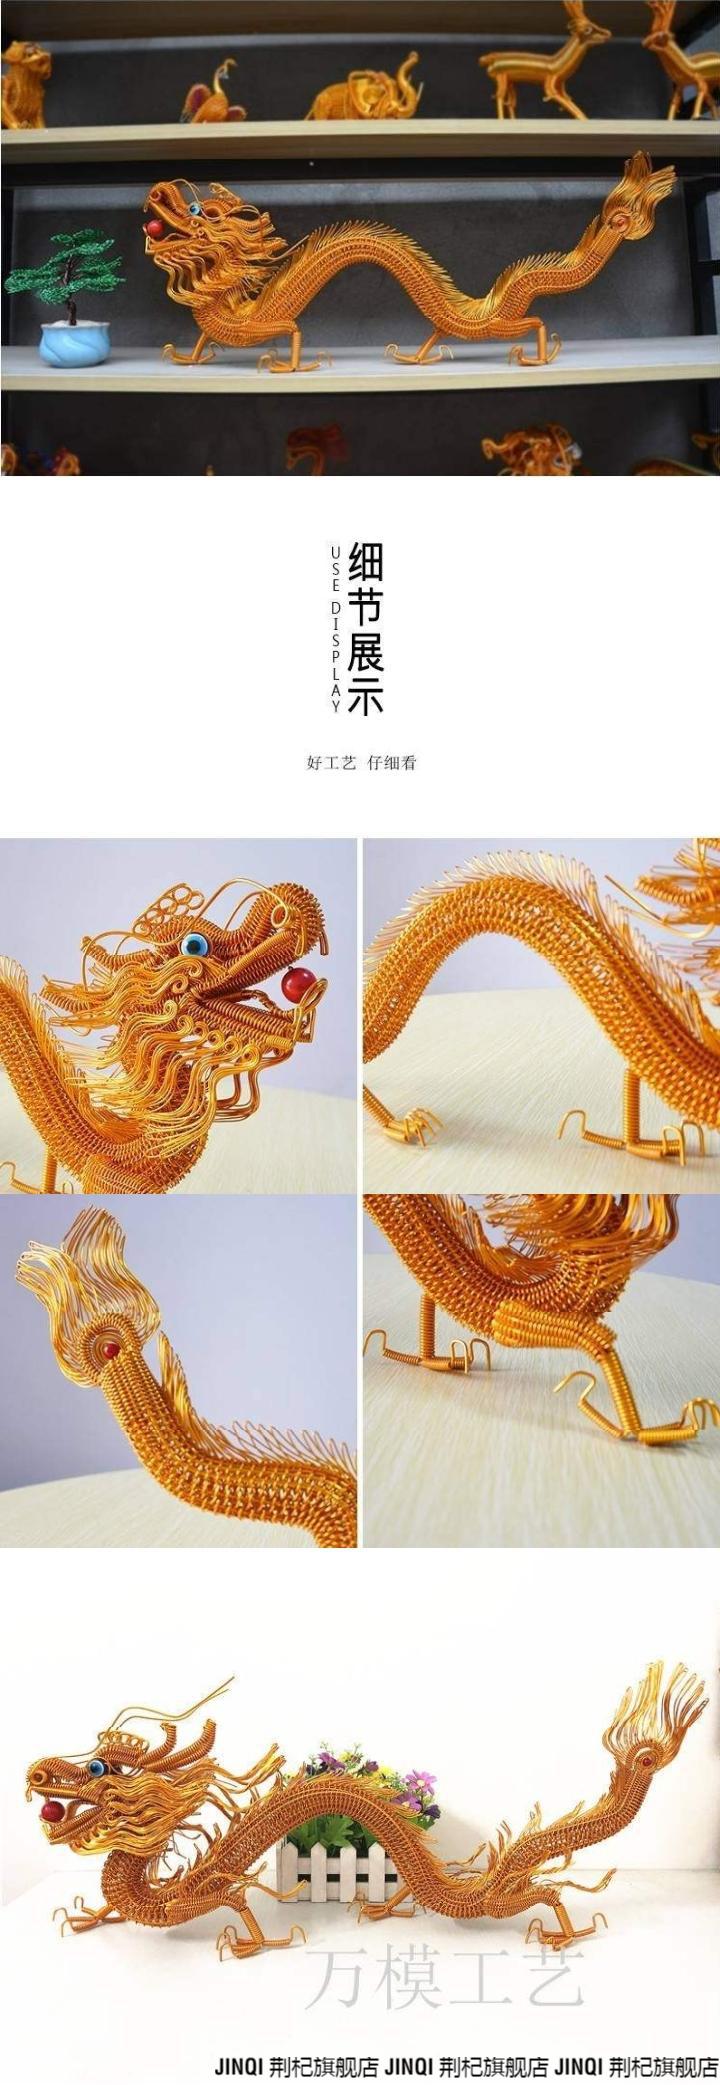 铜丝编织工艺品教程图片